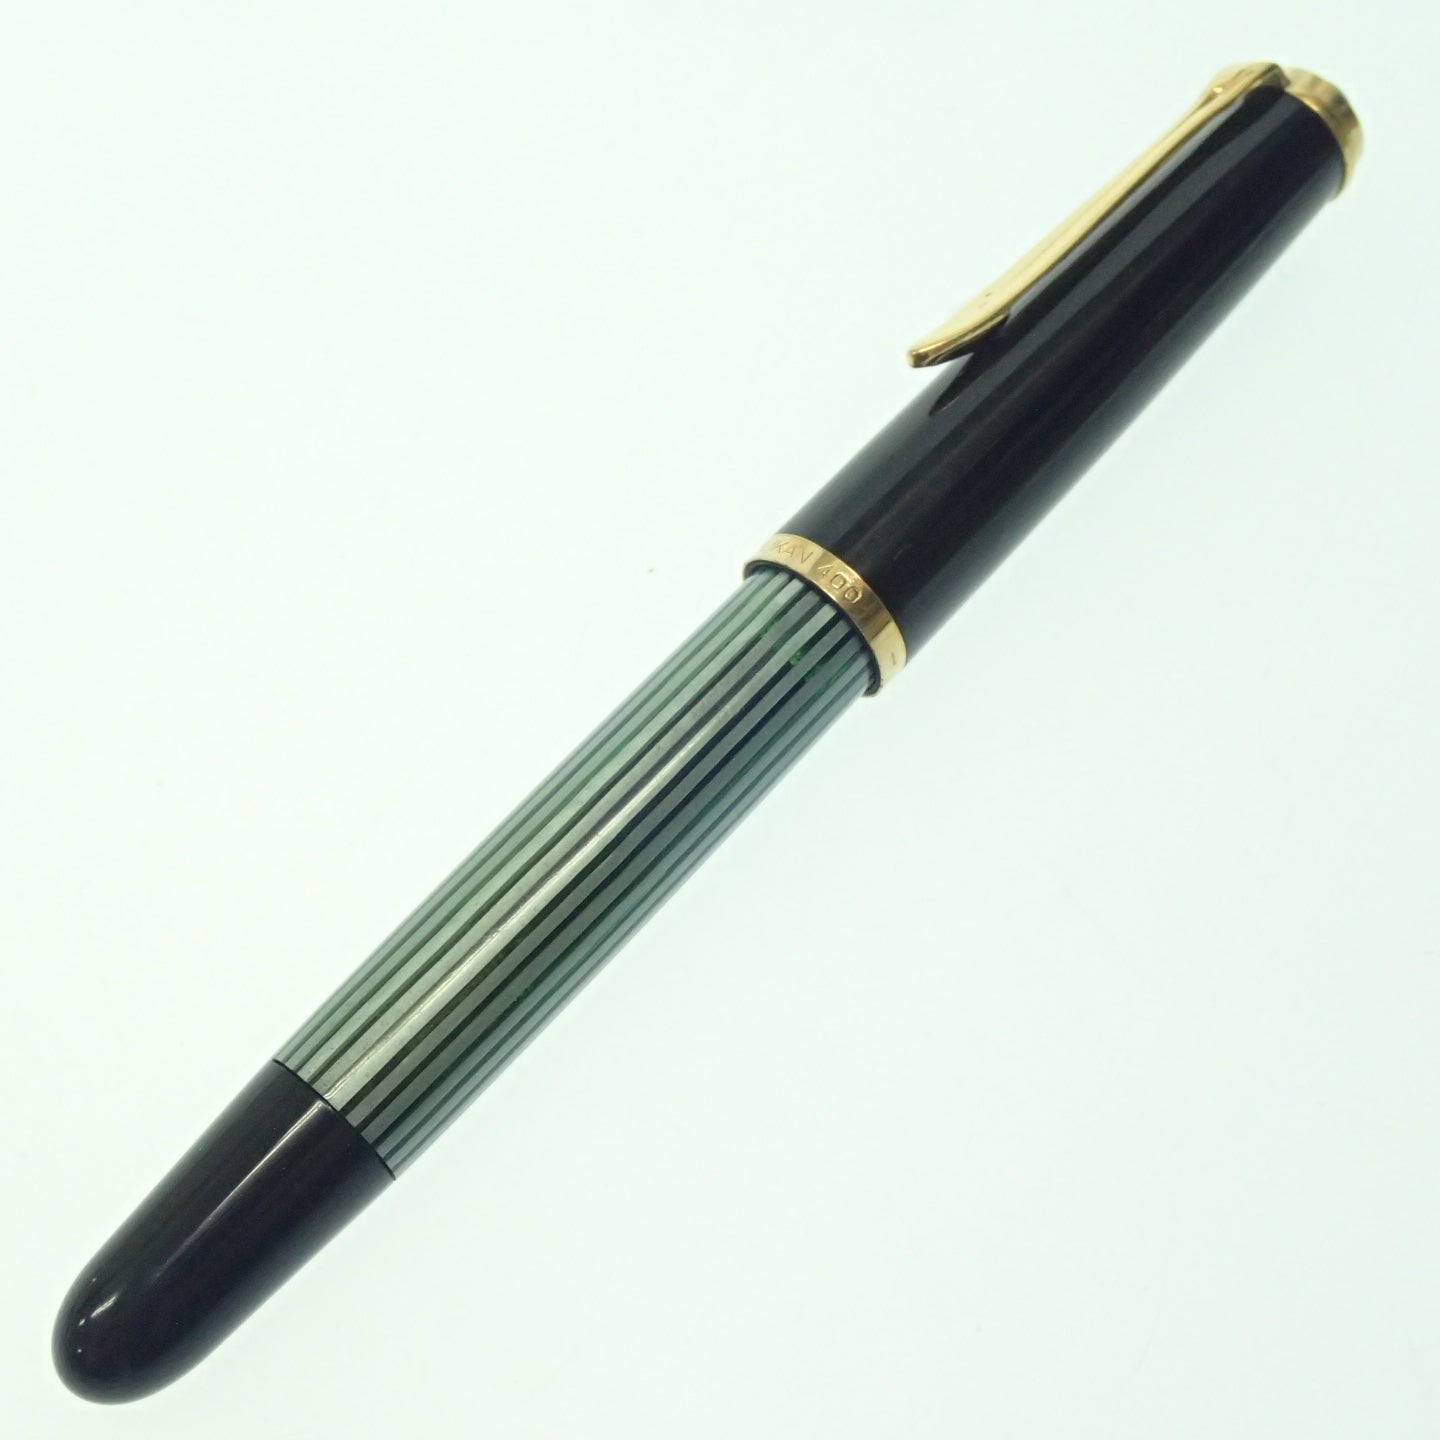 二手 Pelikan 钢笔 Souveran M400 笔尖 14K 绿色 x 黑色 x 金色 Pelikan [AFI3] 